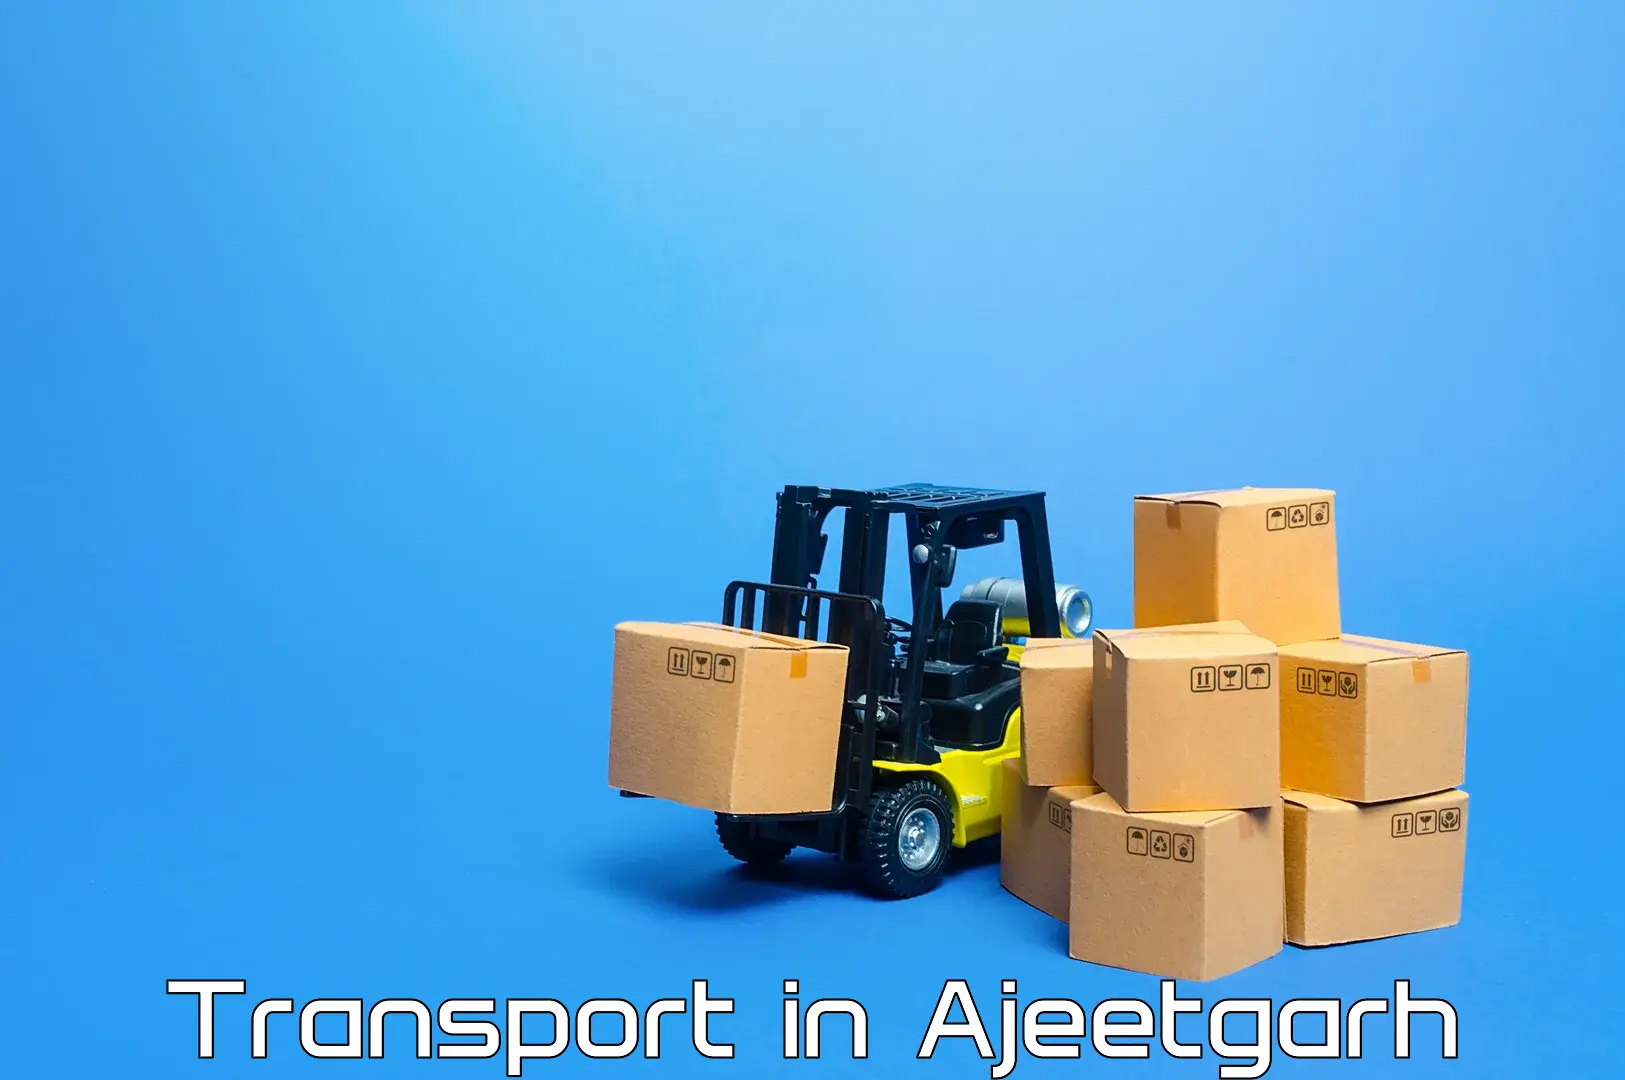 Online transport service in Ajeetgarh